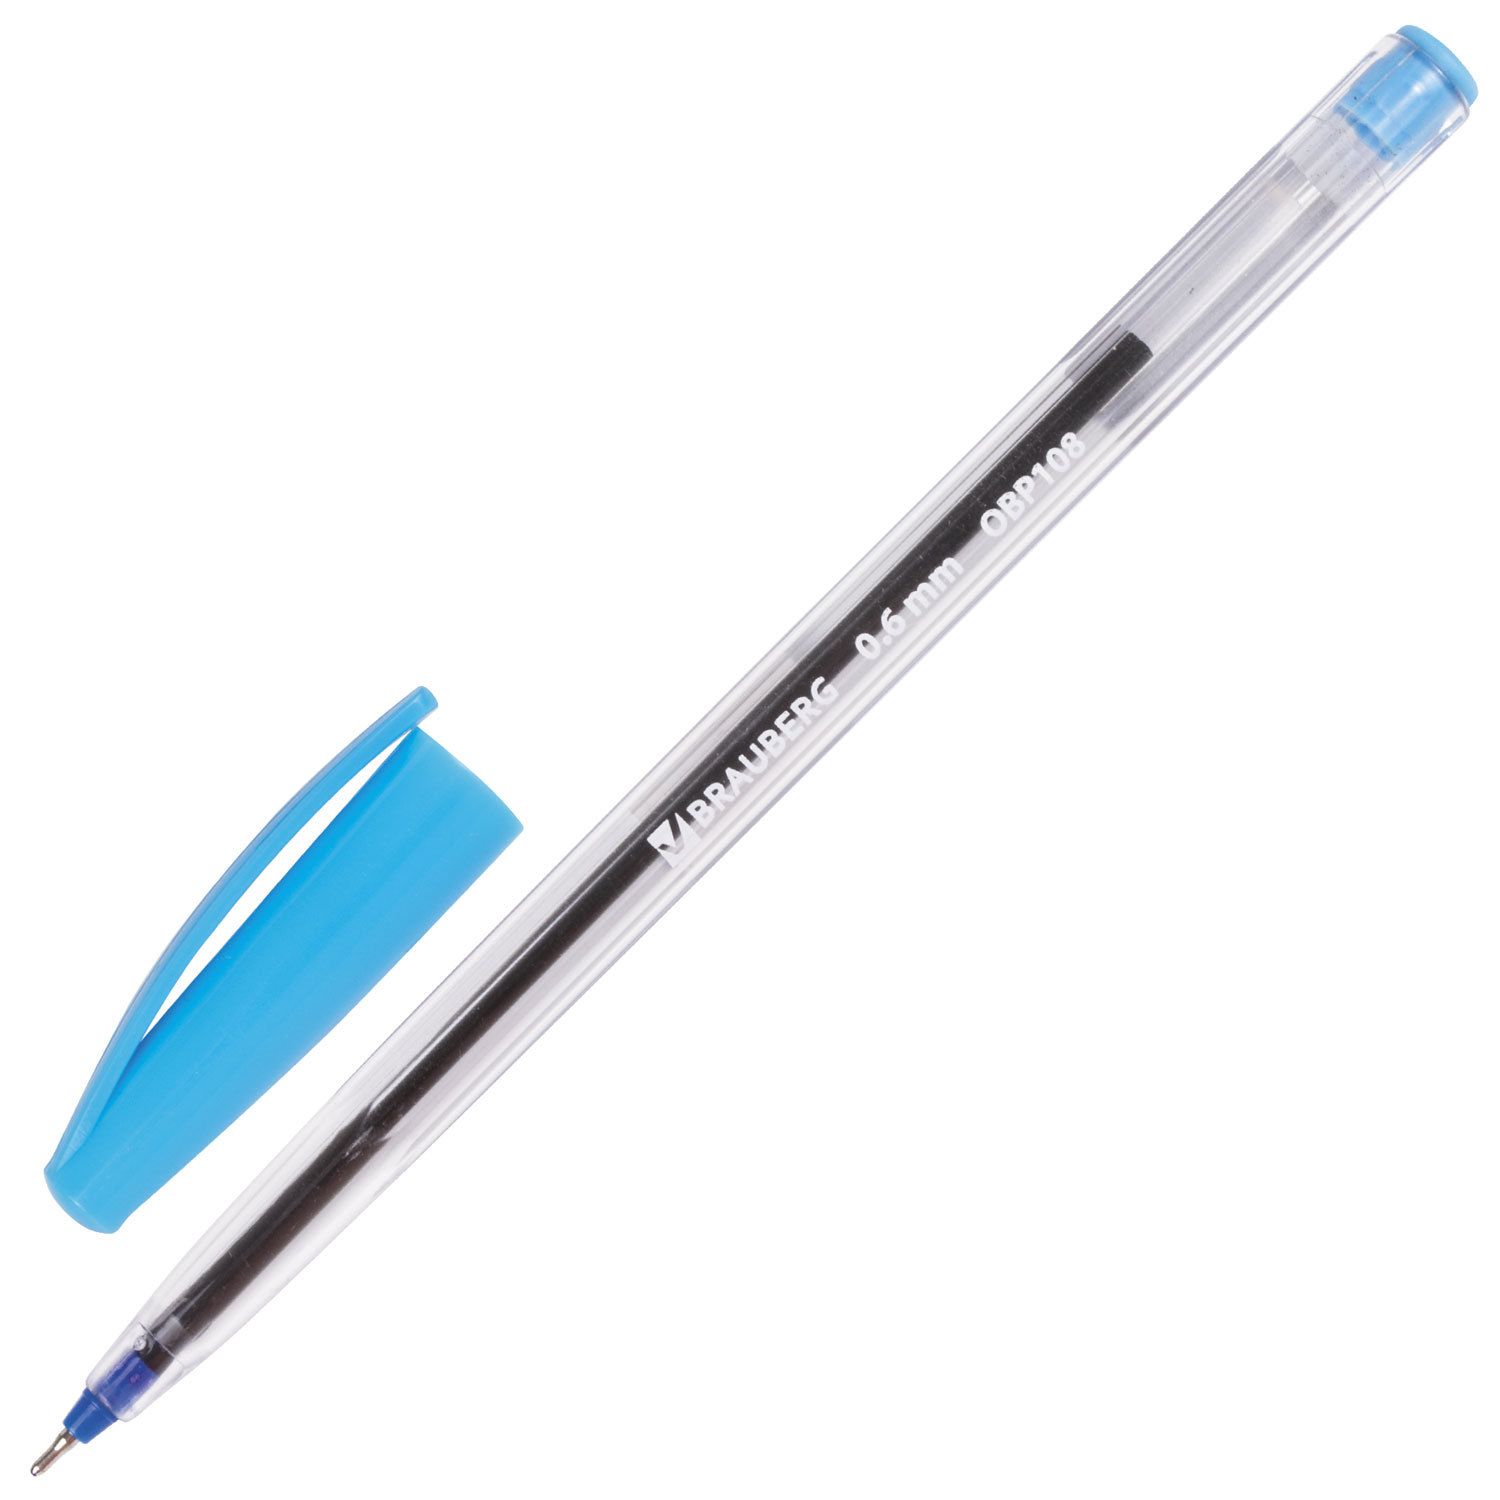 Ручка с прозрачным корпусом. Ручка шариковая BRAUBERG Ice синяя 142686. Ручка шариковая масляная BRAUBERG. Ручка шариковая синяя БРАУБЕРГ. Ручка БРАУБЕРГ масляная.